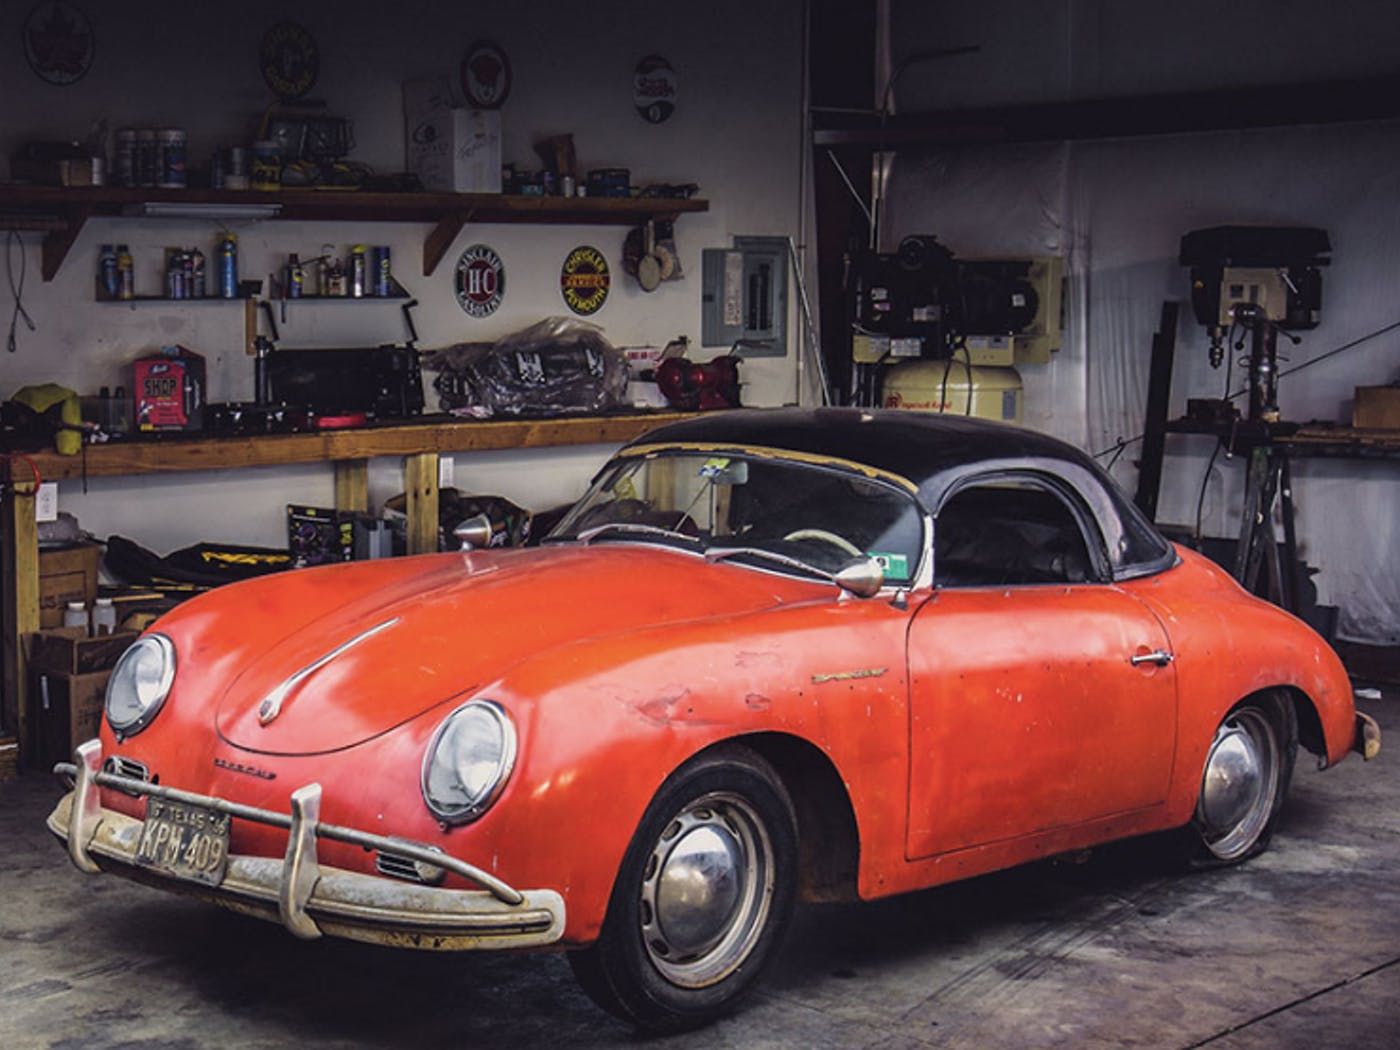 Red 1957 Porsche Speedster in shop